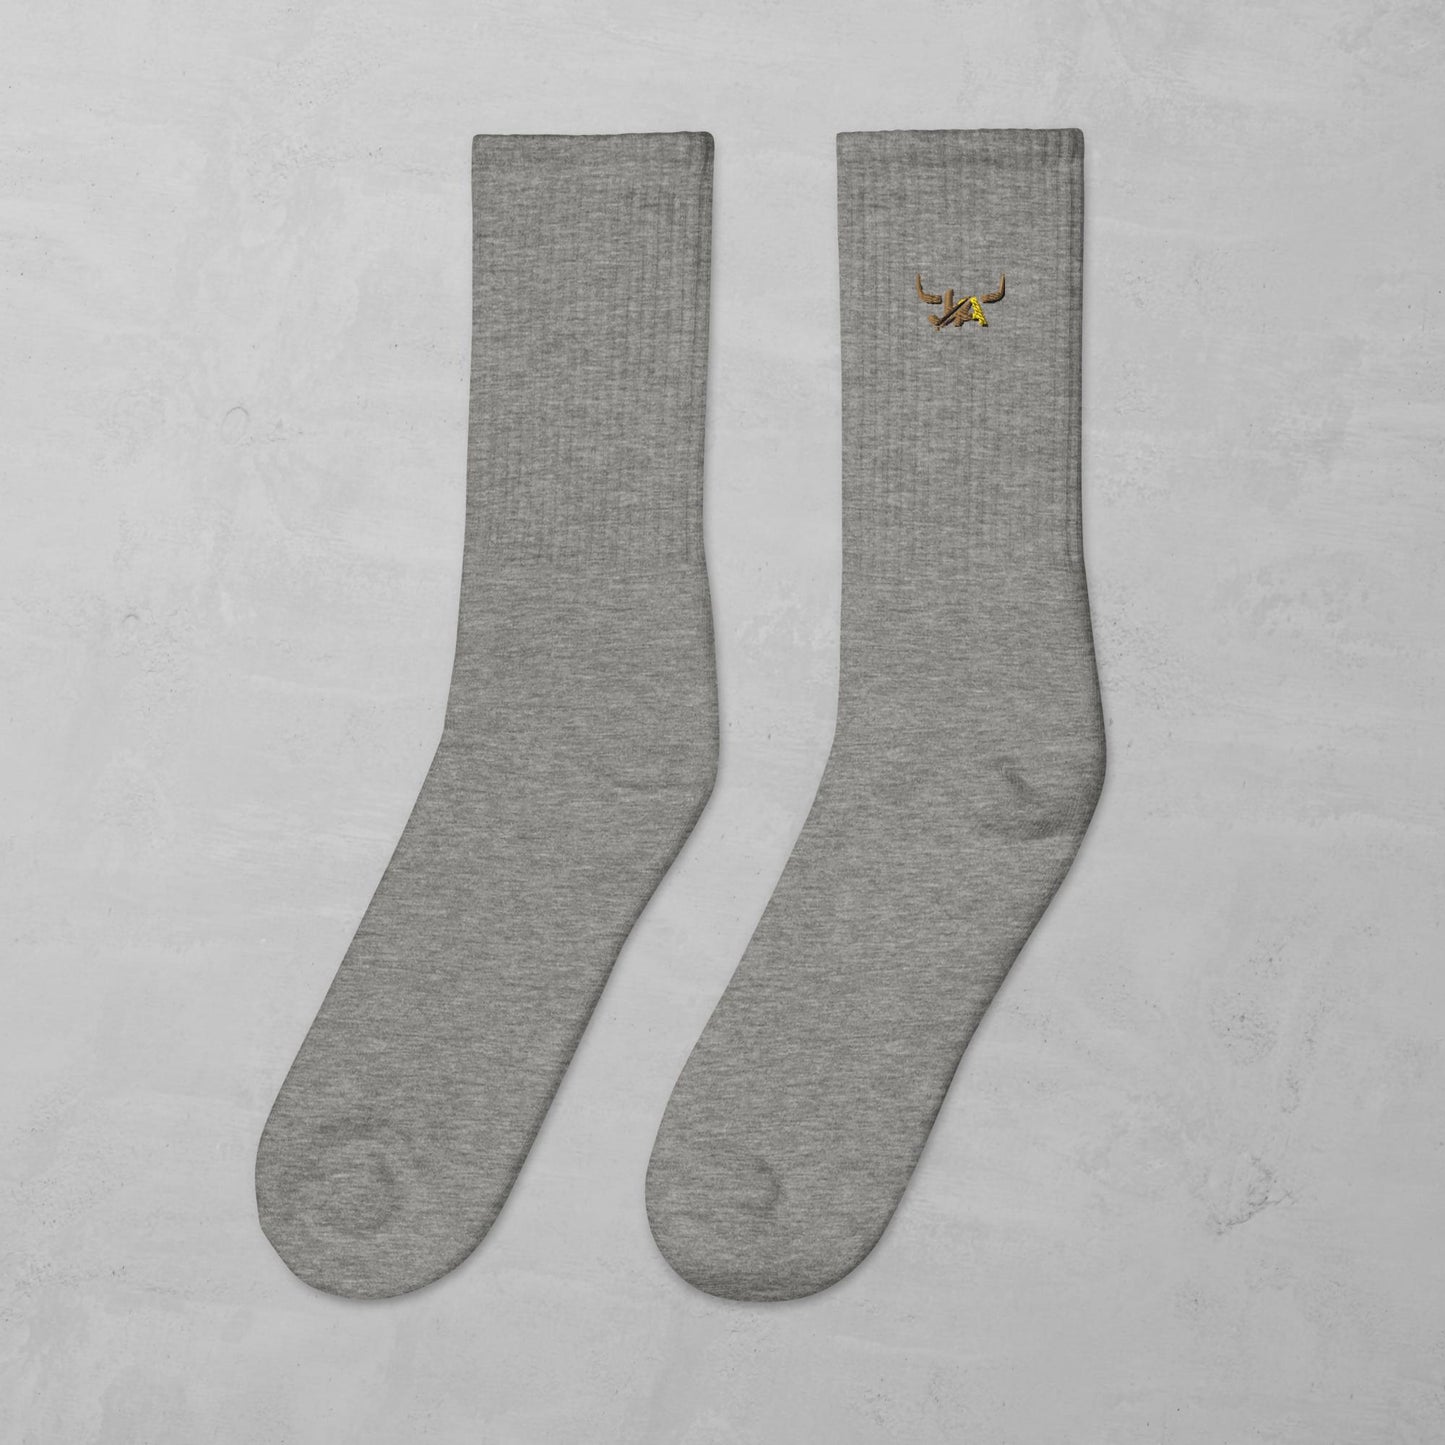 J.A Women's socks